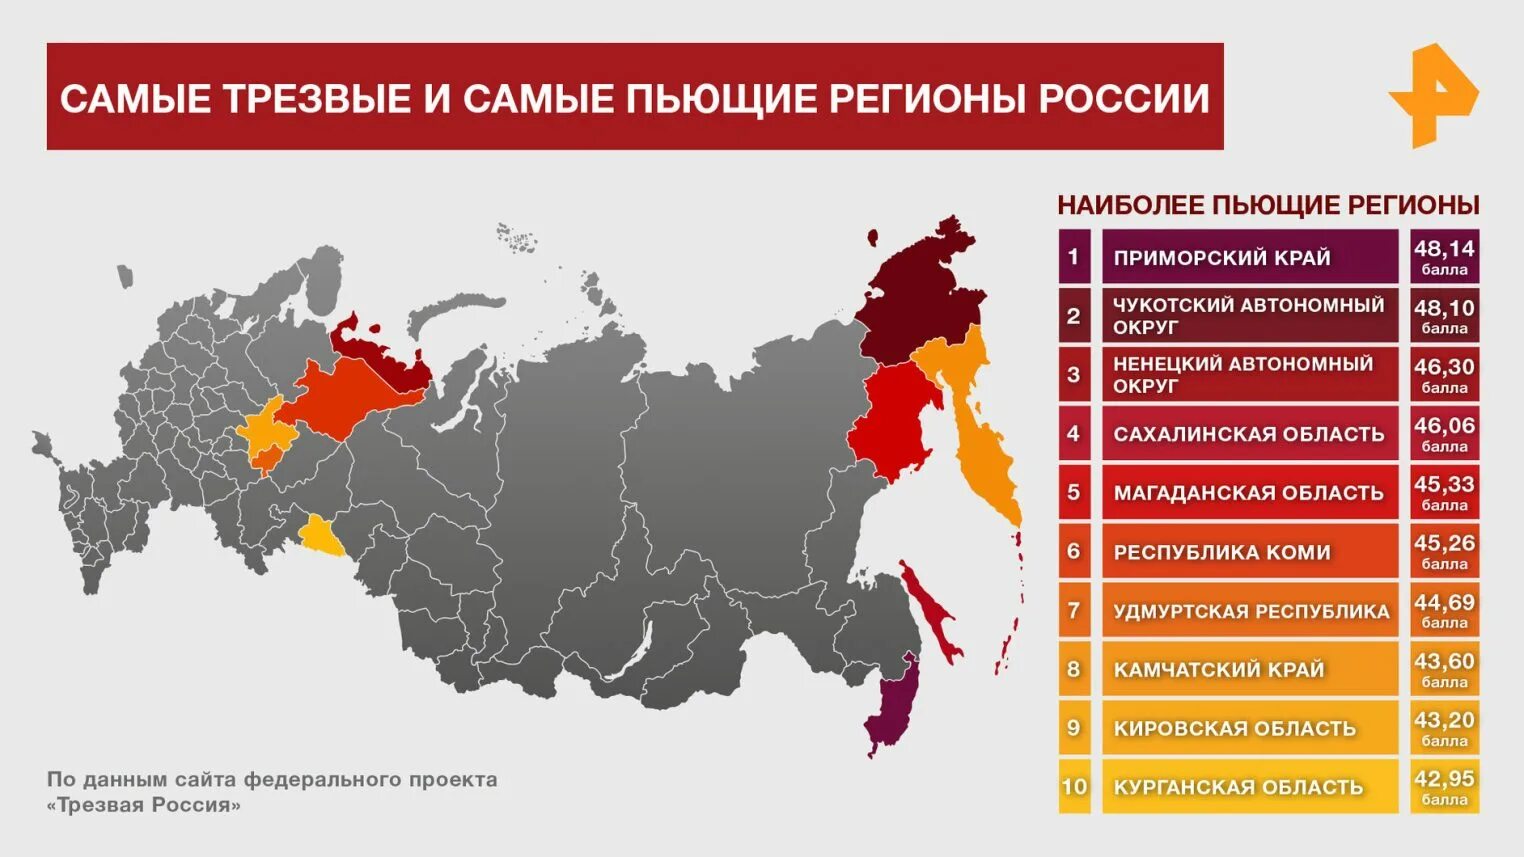 Самый пьющий регион России. Список пьющих регионов России. Самые пьющие регионы. Самые пьющие регионы России 2021. Д рф 2021